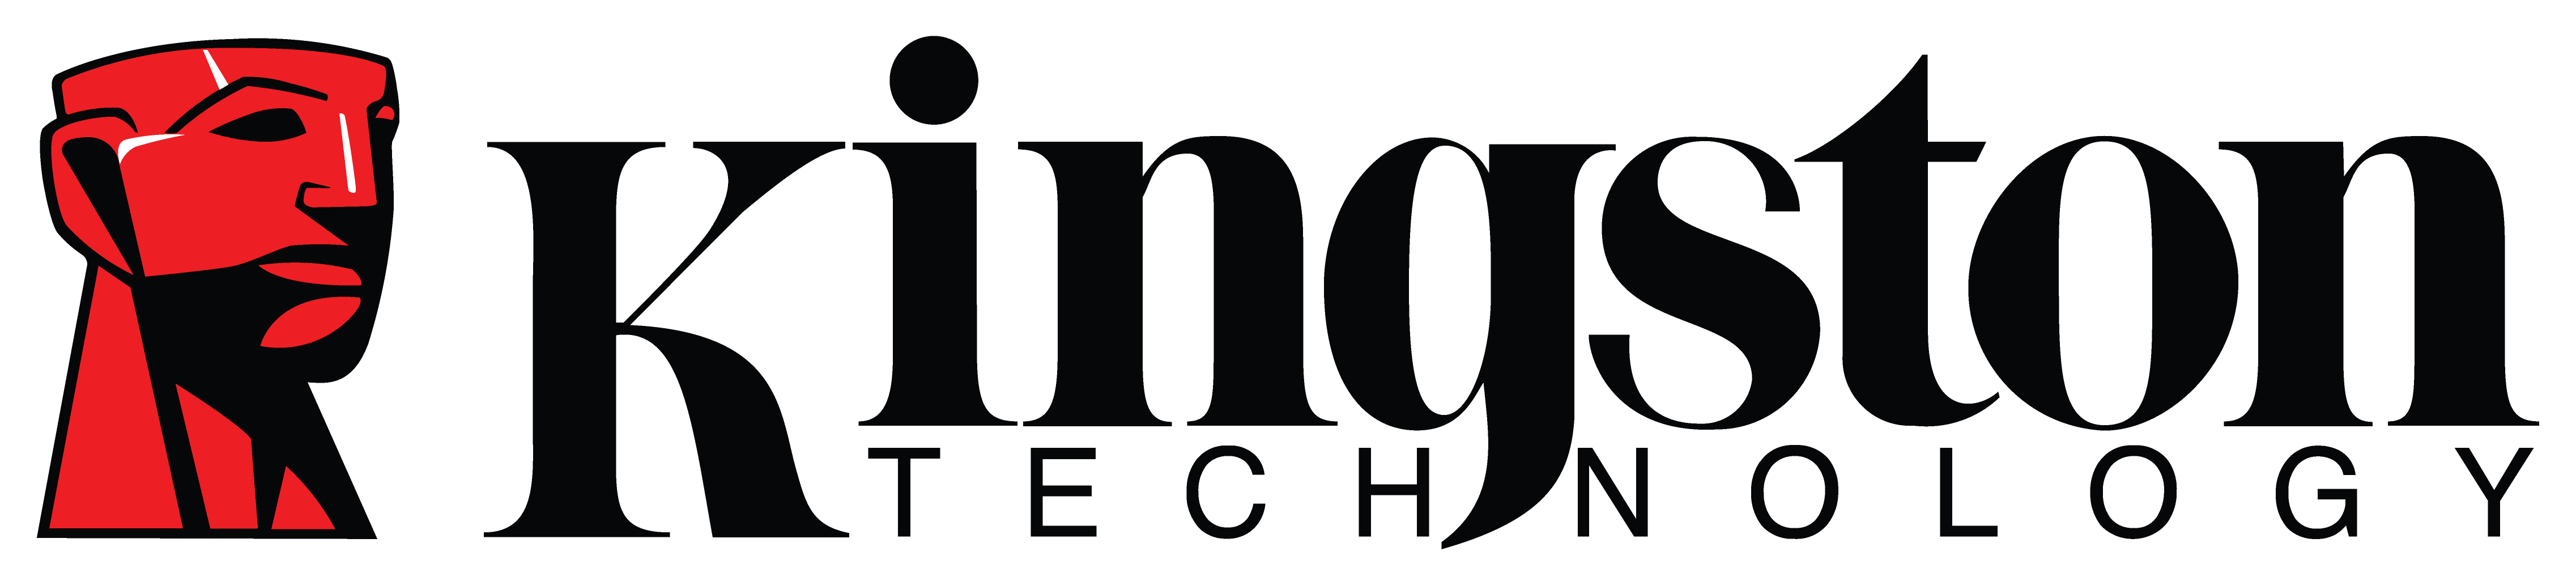 Kingston Technology logo colors